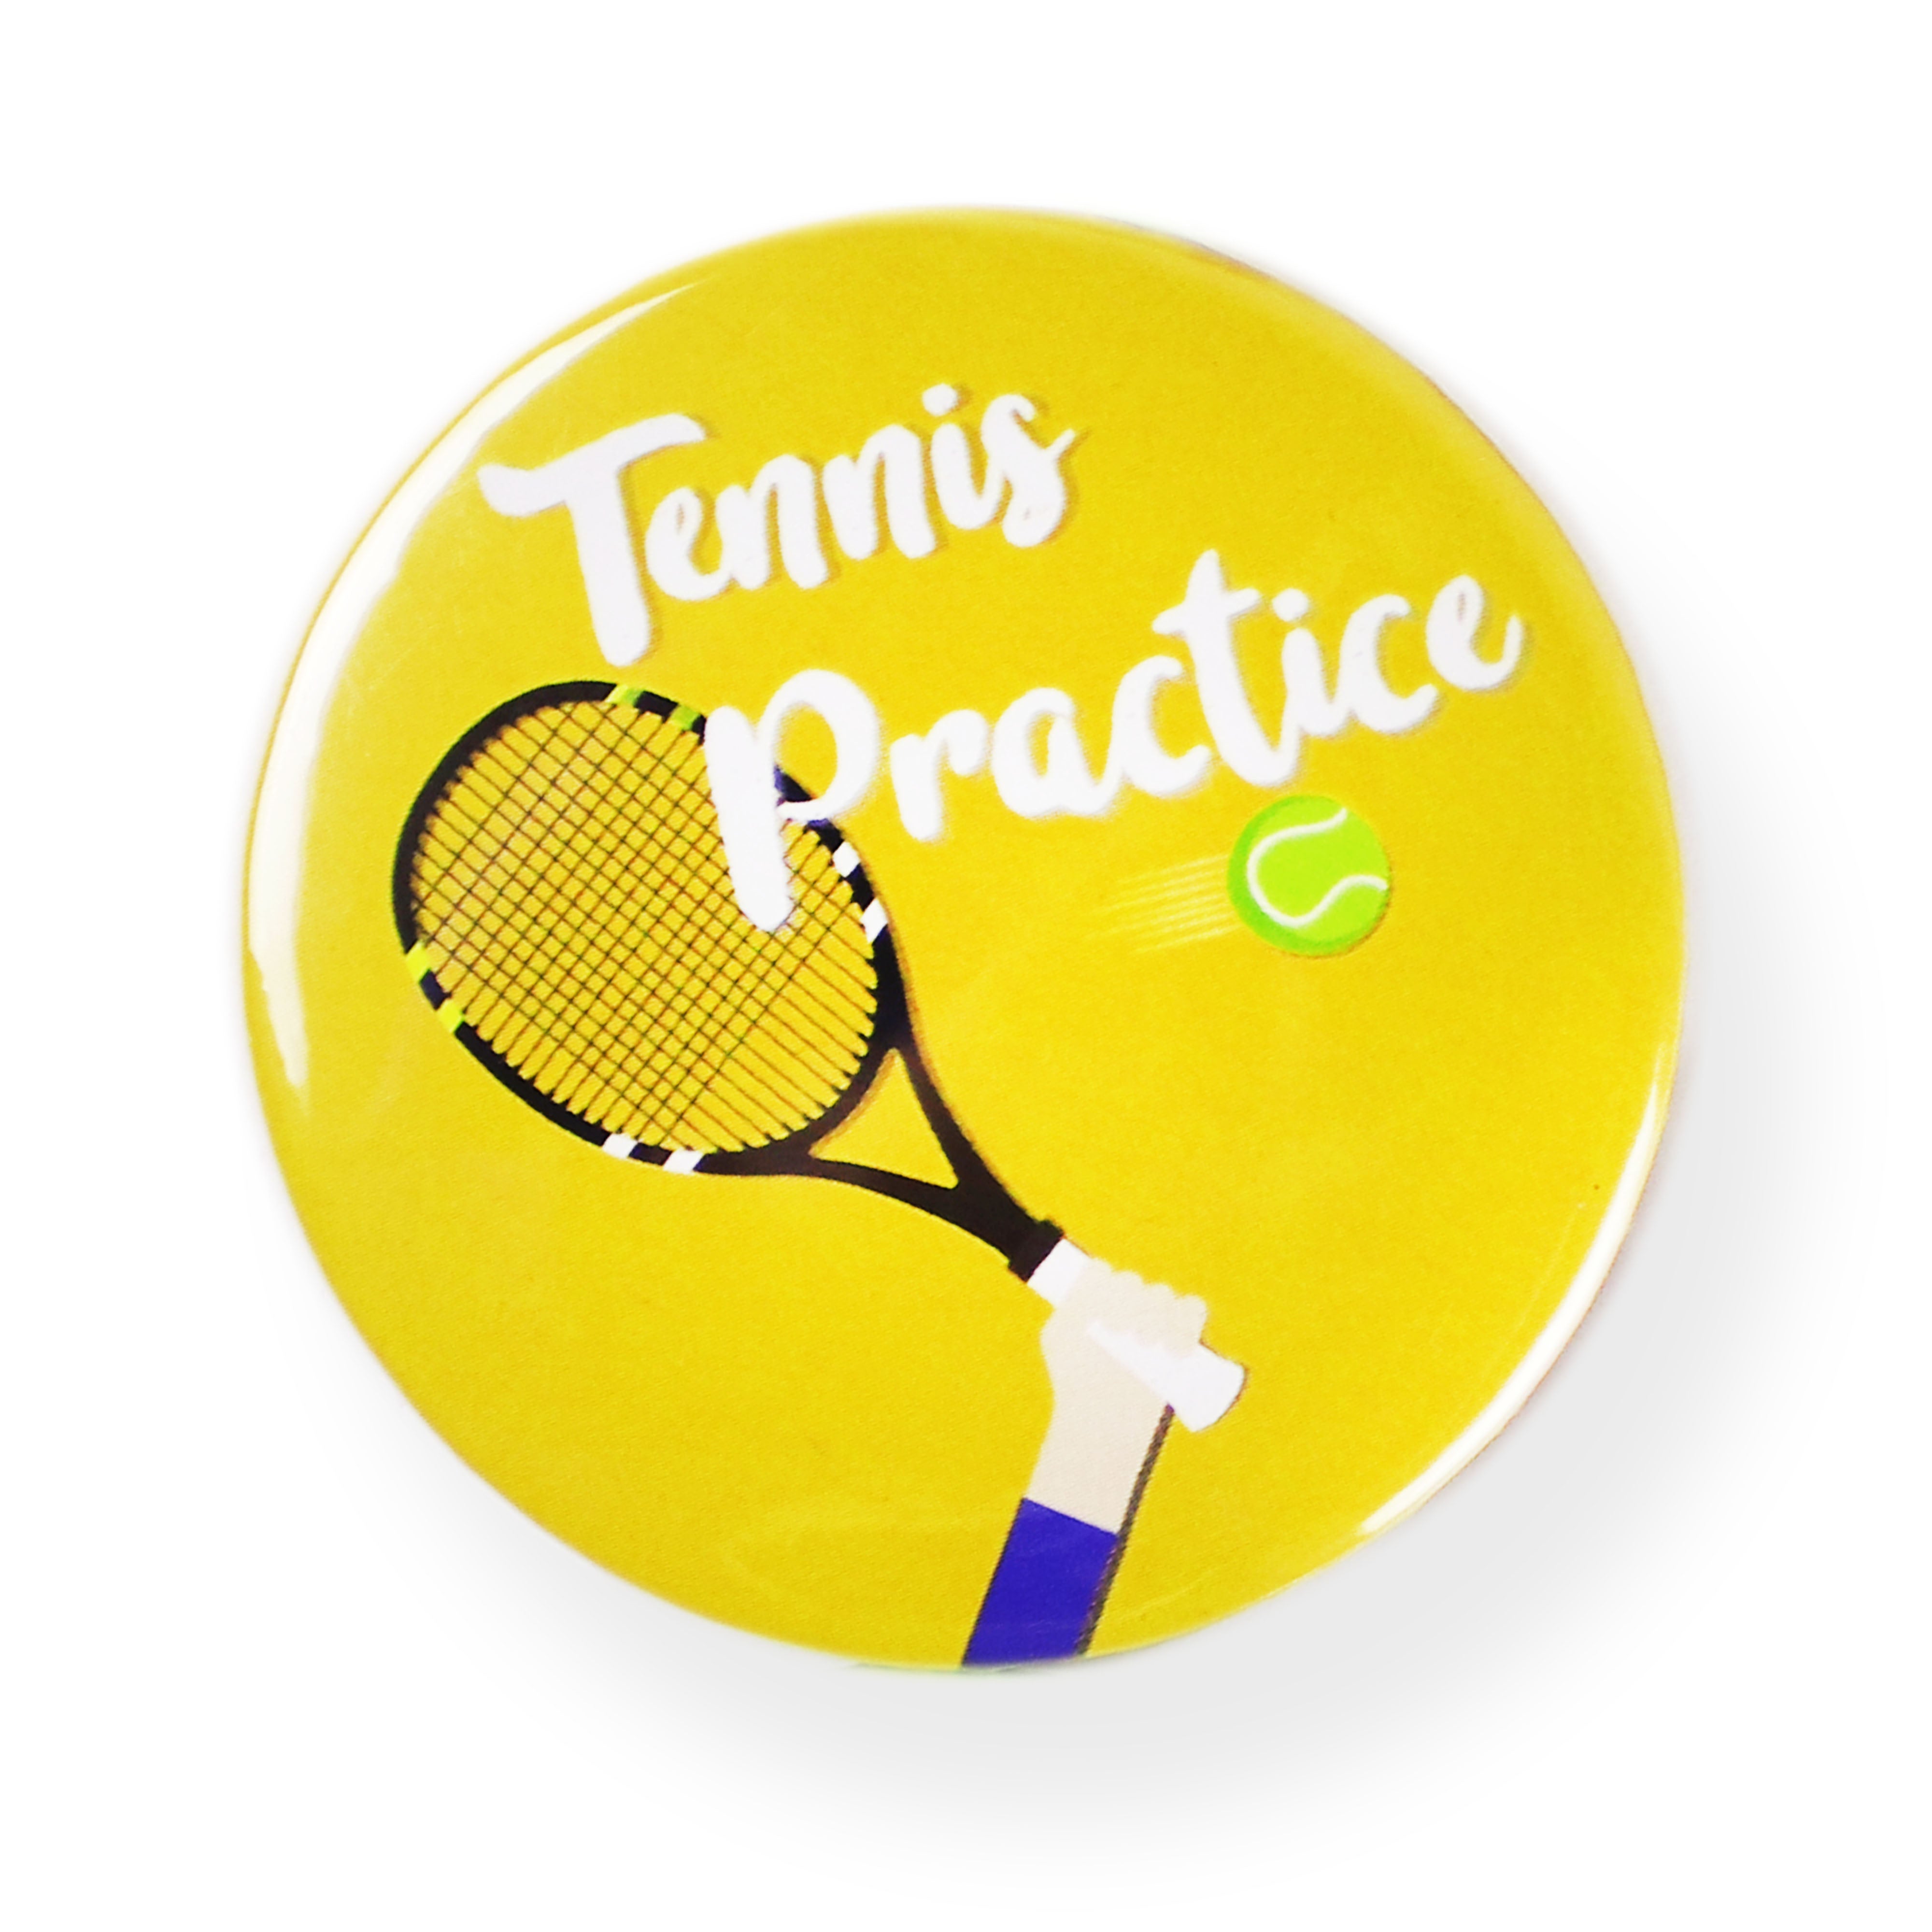 Tennis Practice Magnet - مغناطيس تدريب التنس